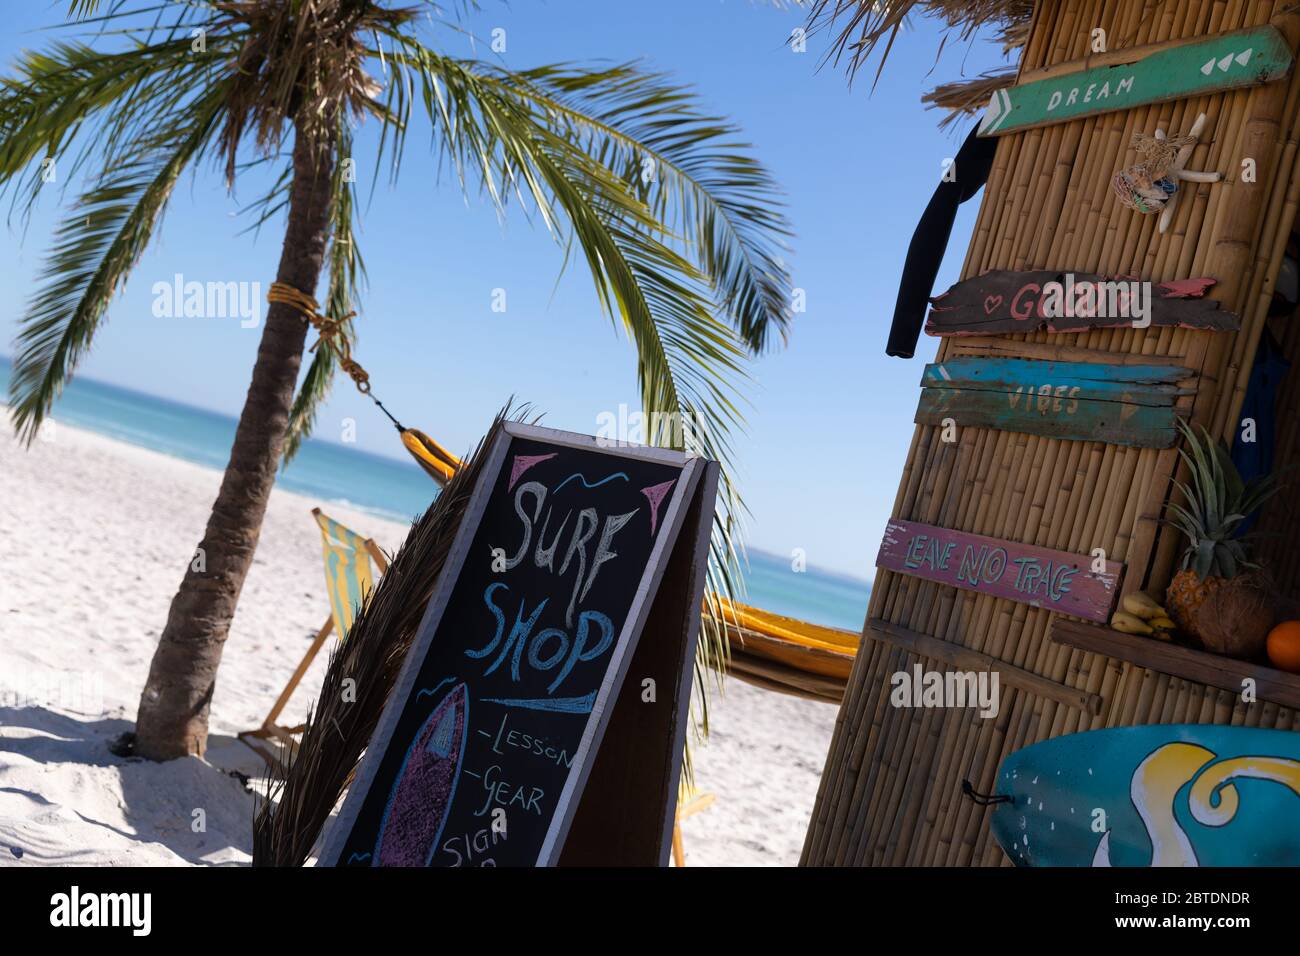 Vue magnifique sur une plage avec un palmier et une boutique de surf Banque D'Images